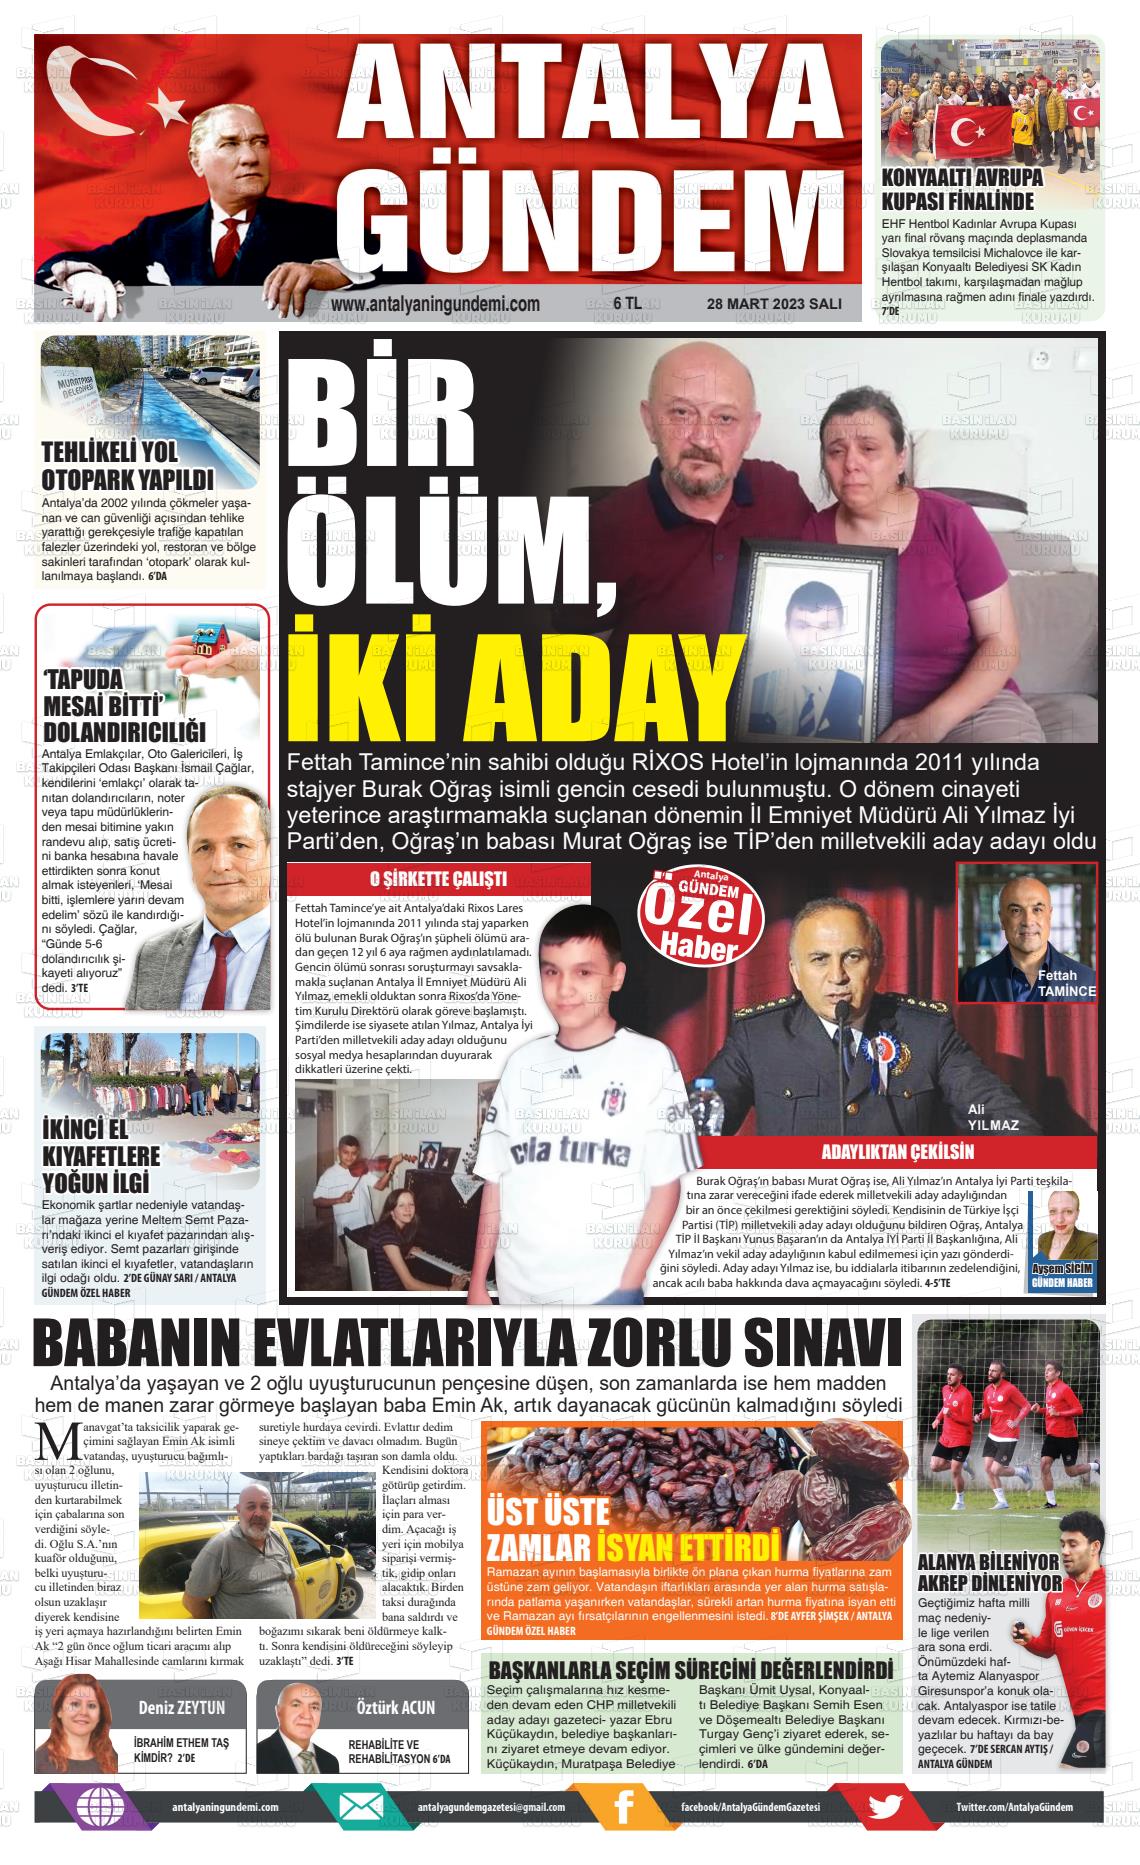 28 Mart 2023 Antalya'nın Gündemi Gazete Manşeti